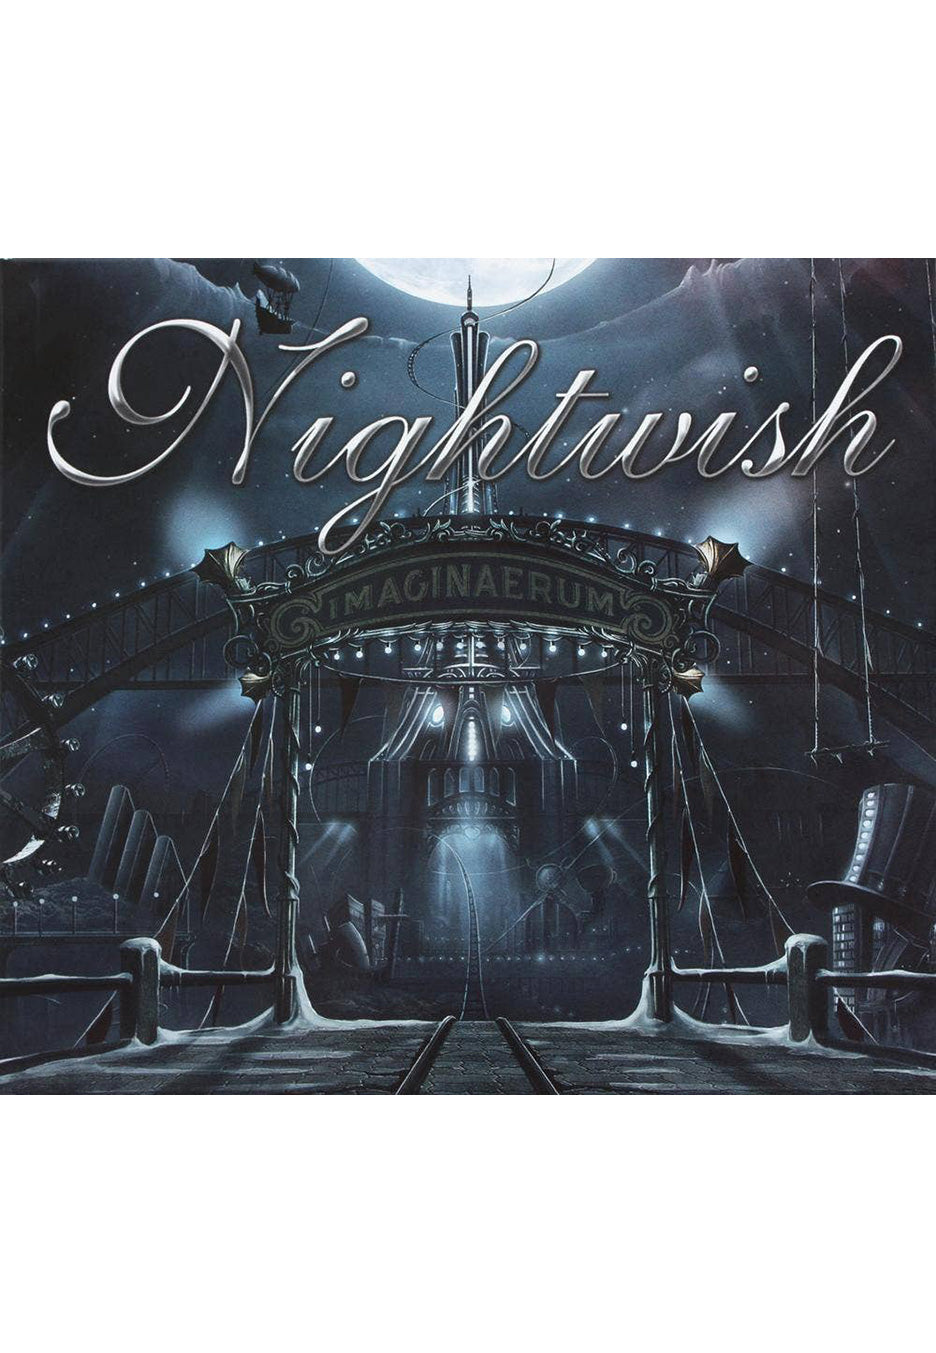 Nightwish - Imaginaerum - Digipak 2 CD